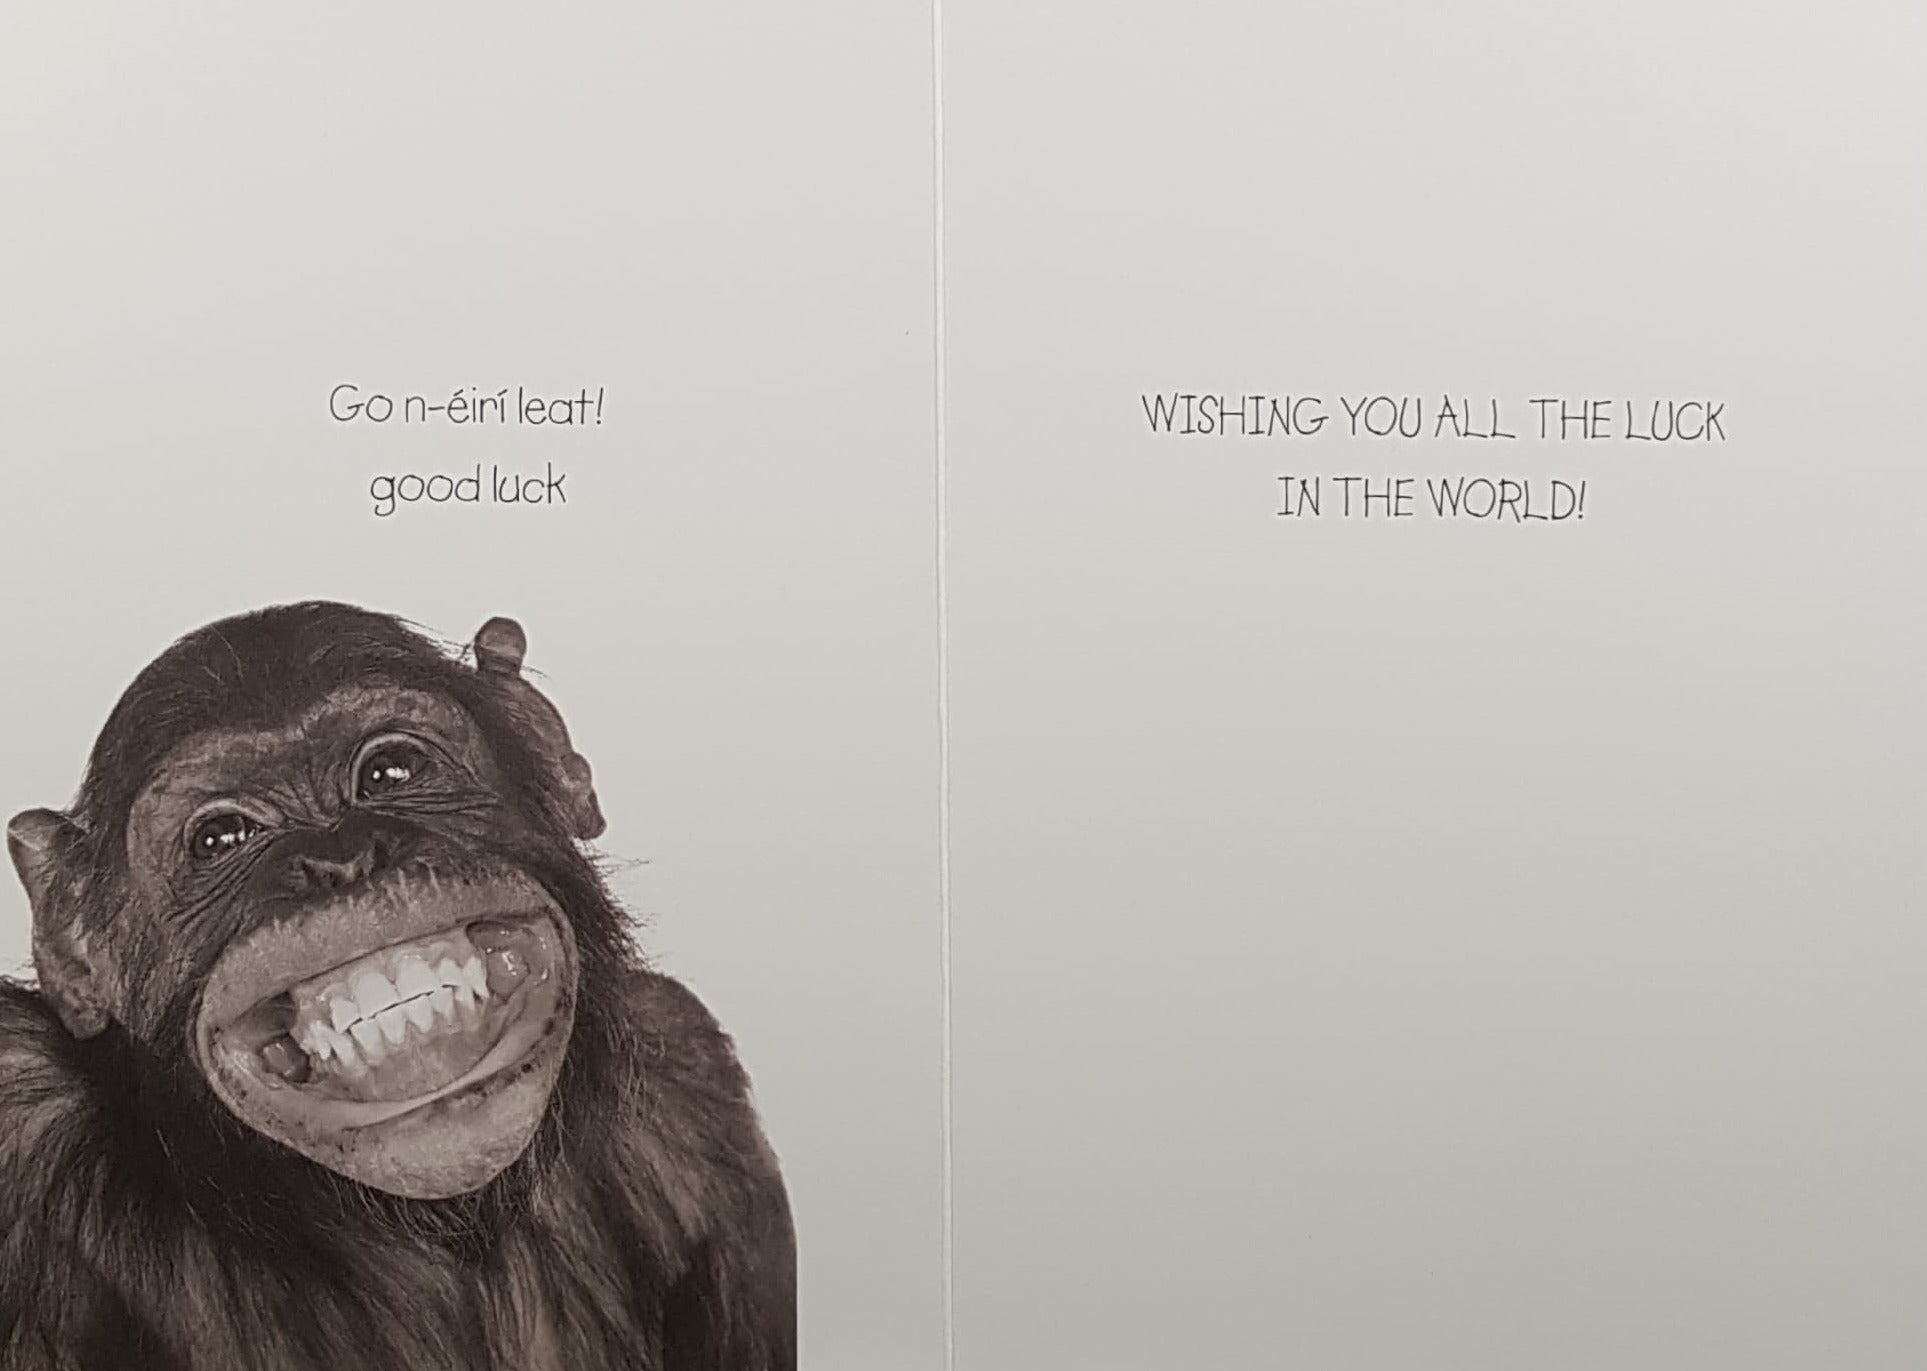 Good Luck Card - Leaving Cert / Smiling Monkey 'Easy Peasy'